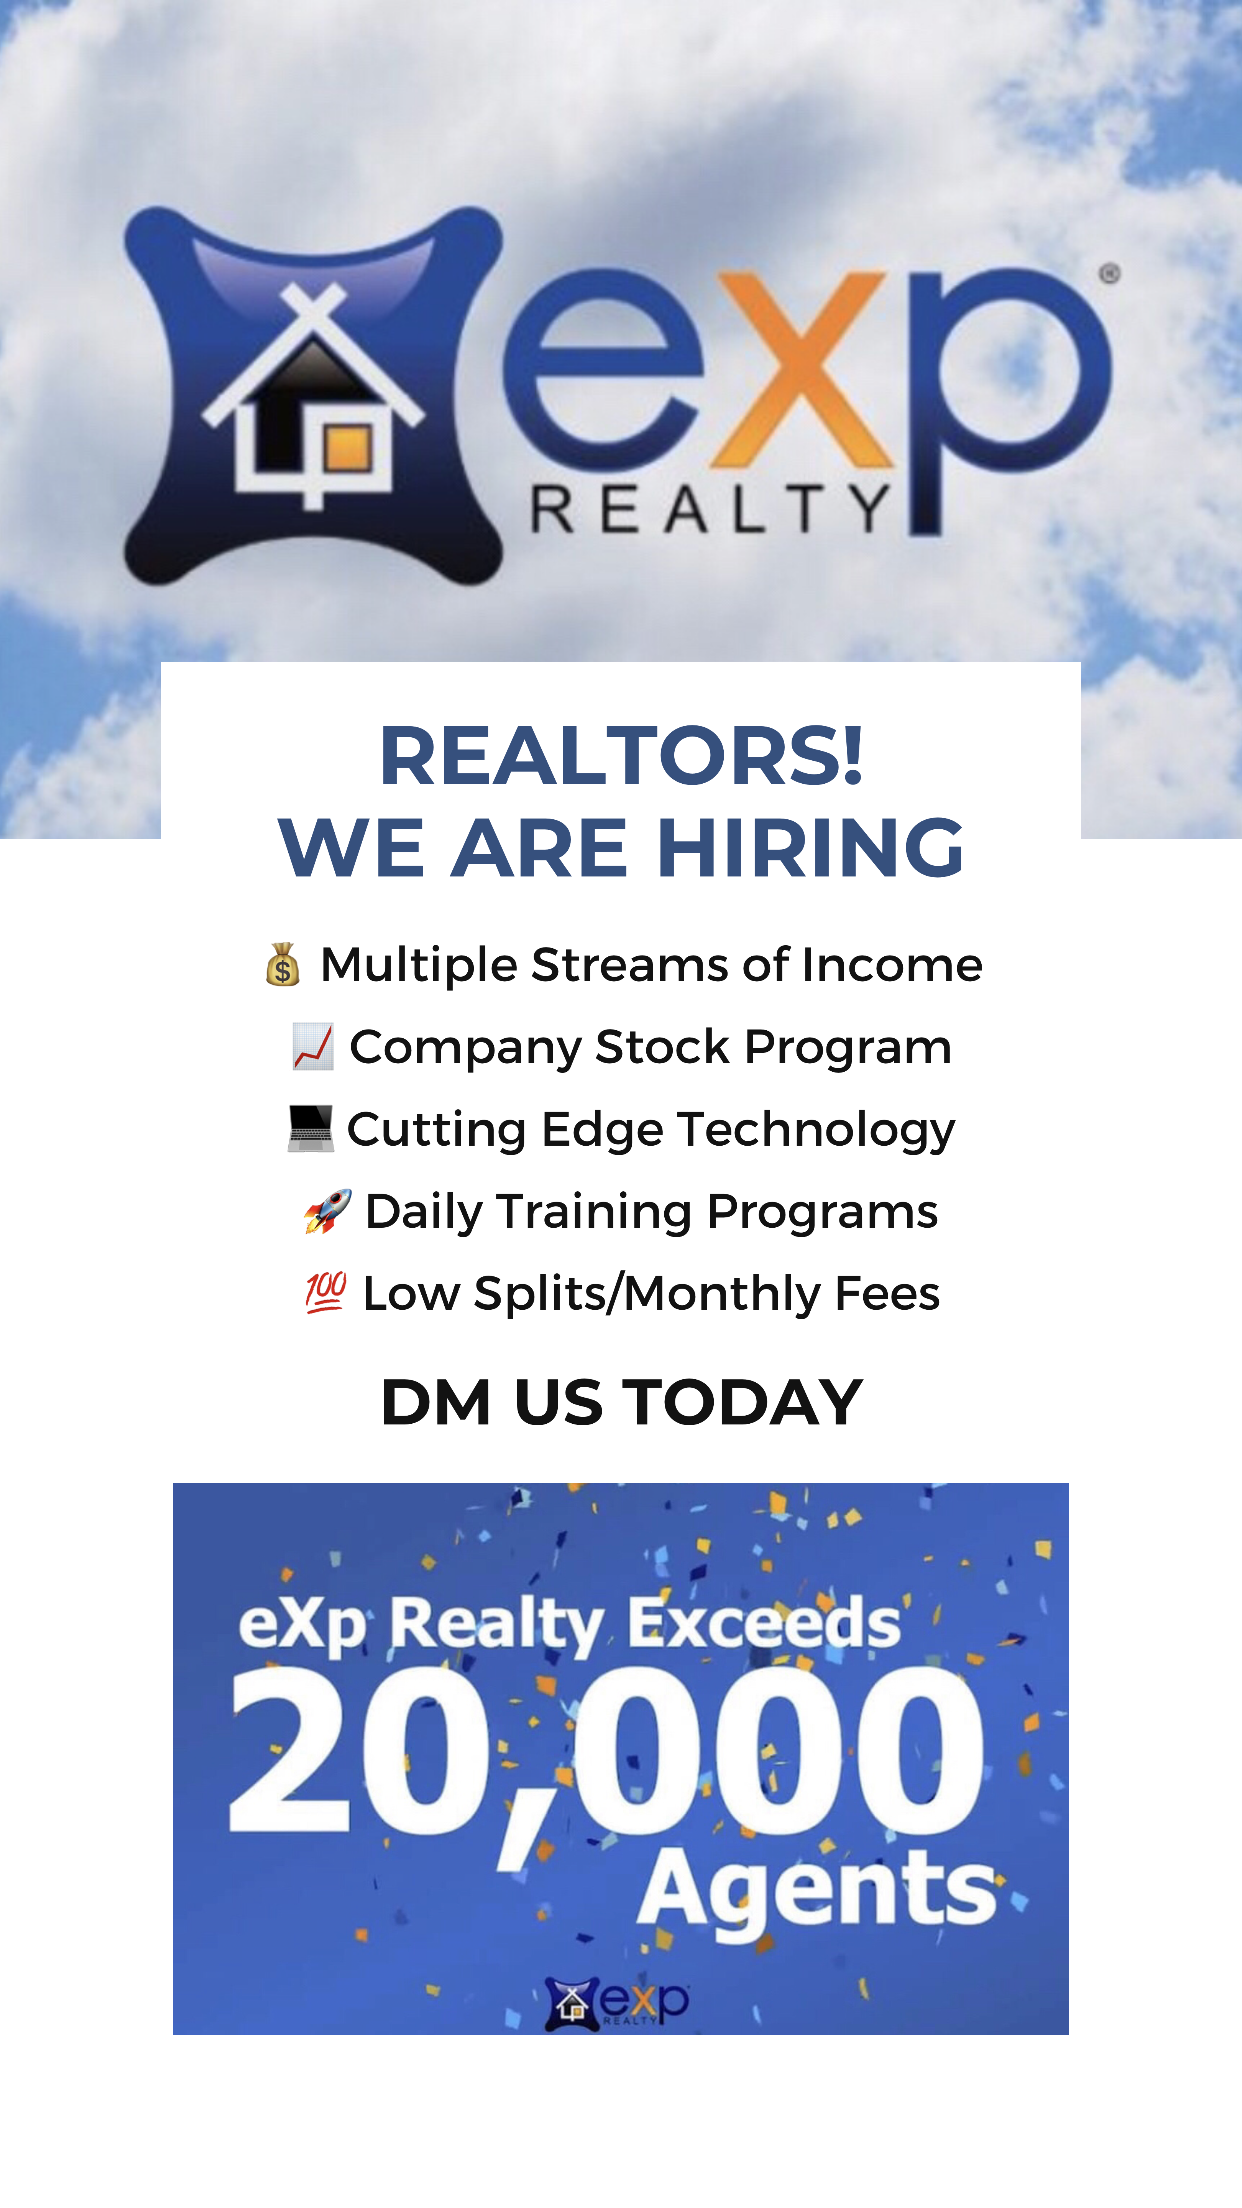  how much di real estate agents make